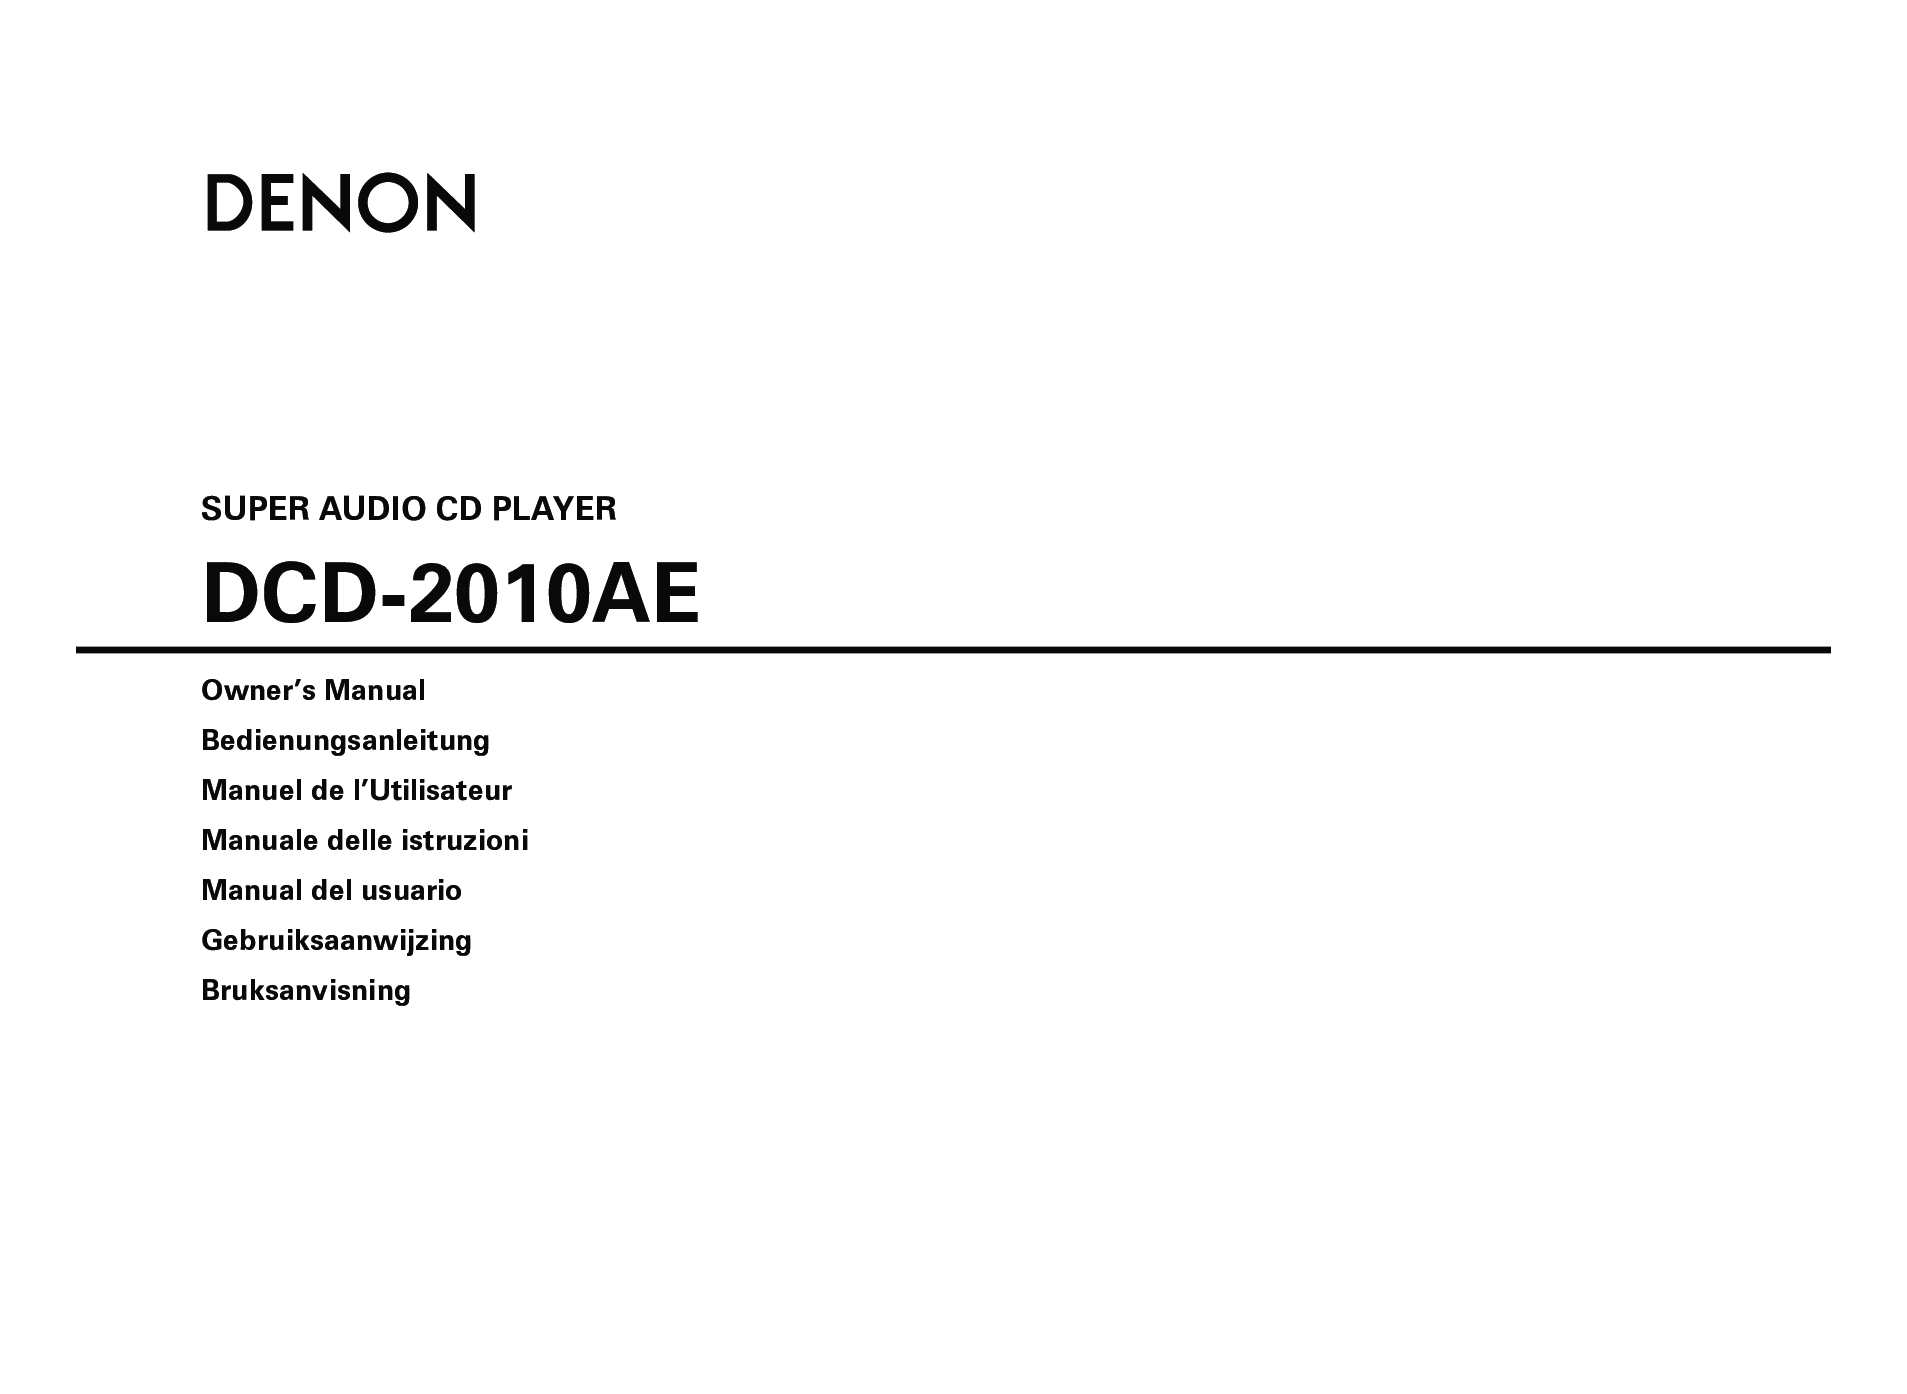 Denon DCD-2010AE Owner Manual